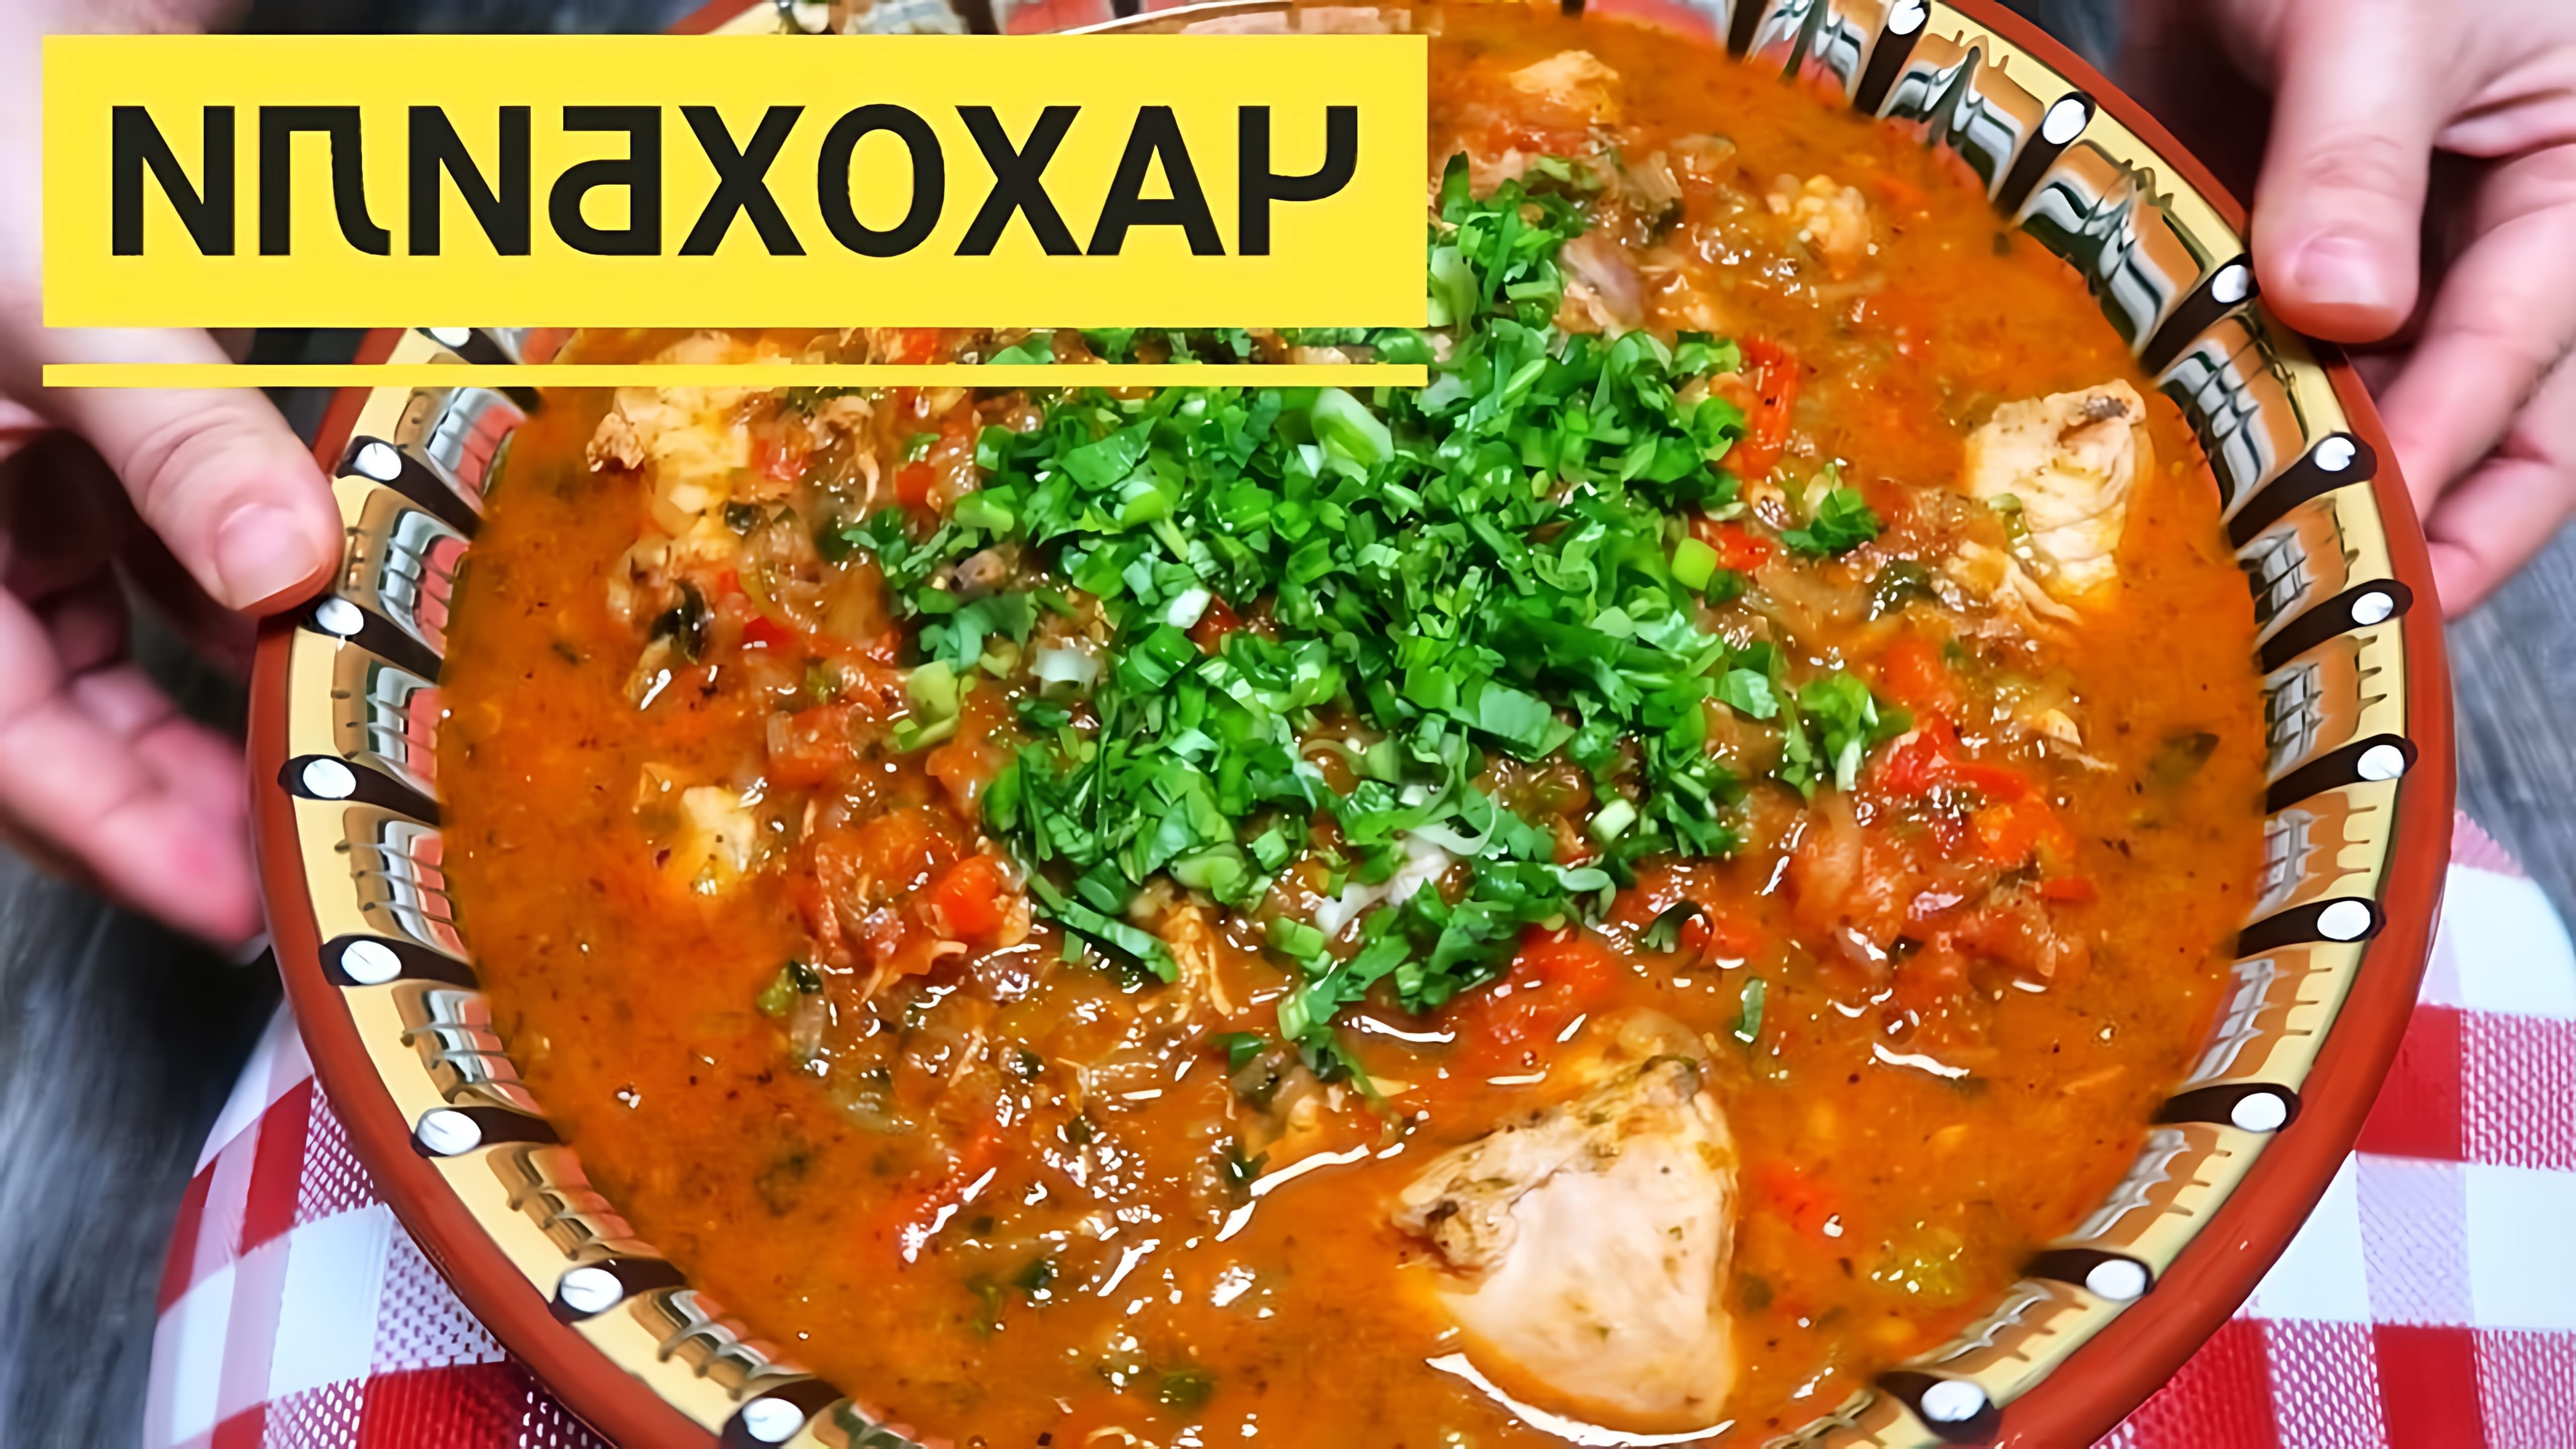 В этом видео демонстрируется процесс приготовления грузинского блюда чахохбили